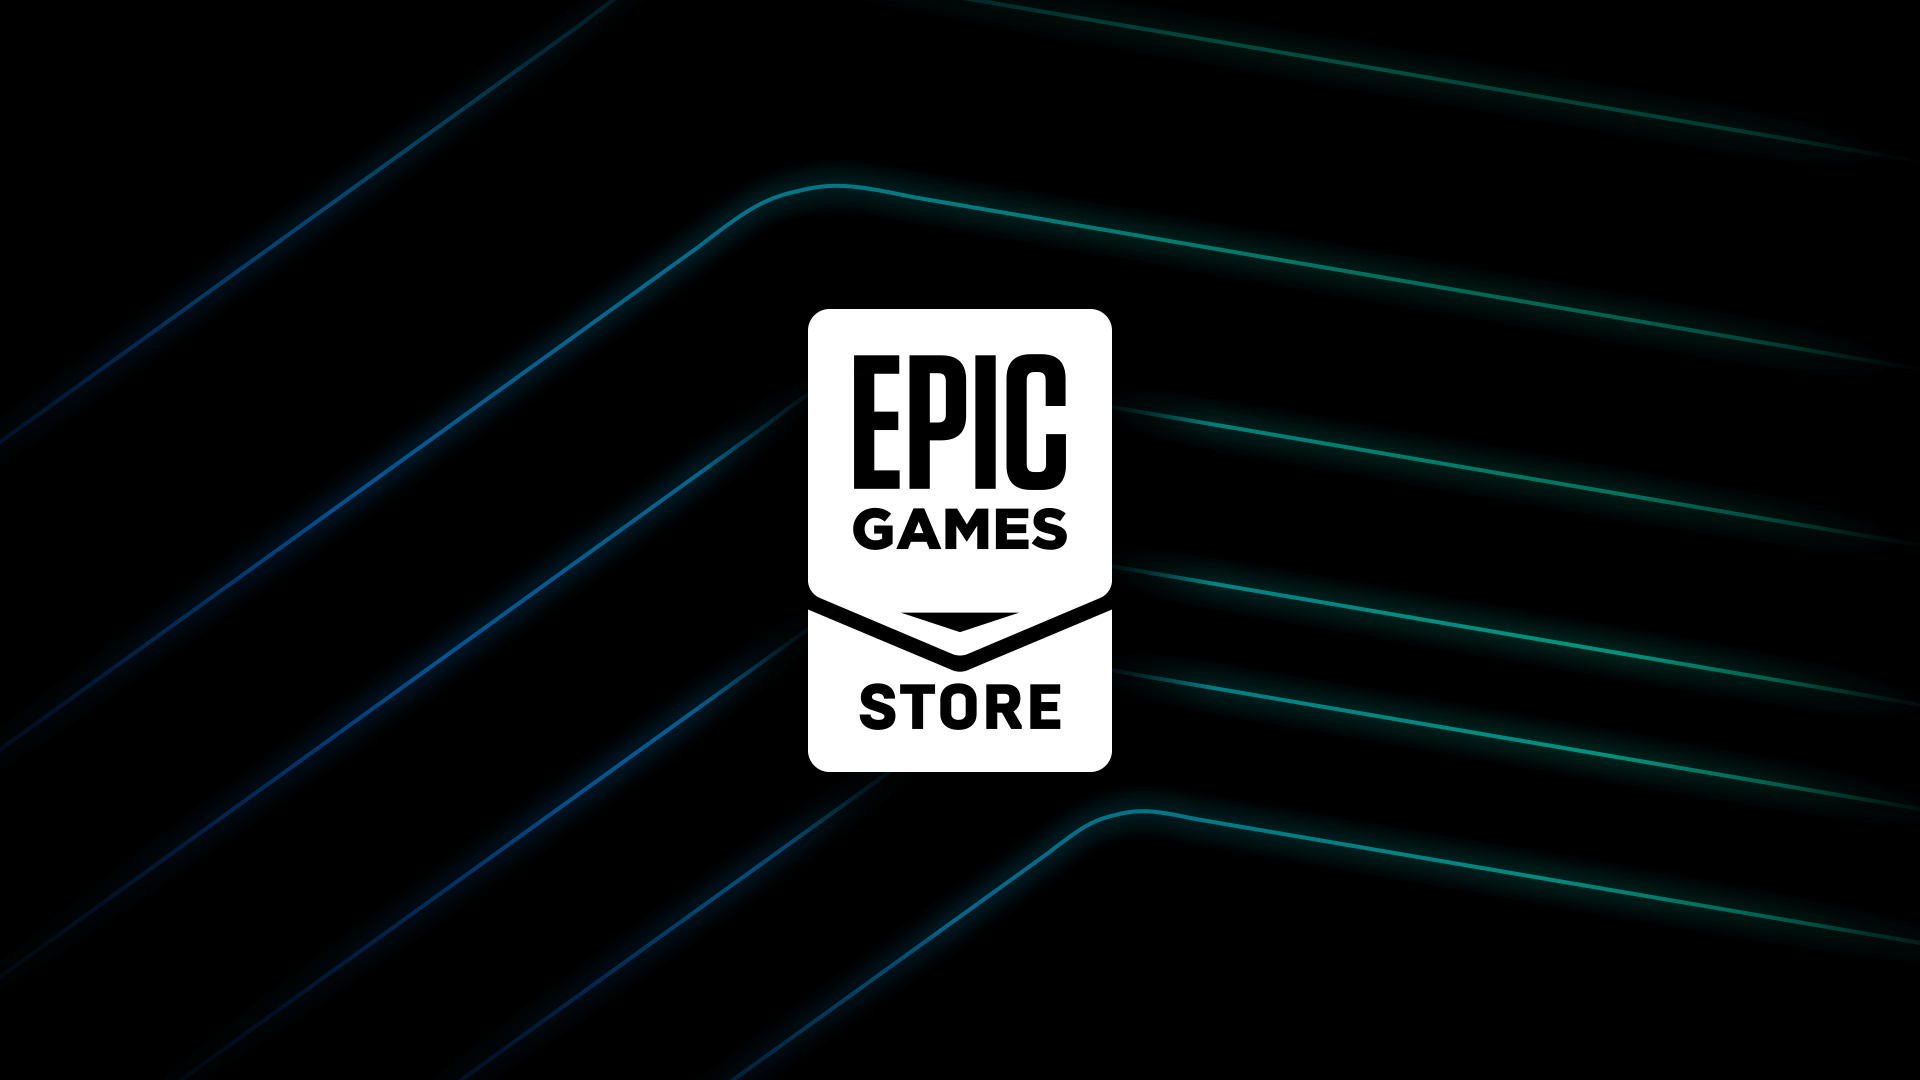 Epic Games’in Bu Hafta Vereceği Ücretsiz Oyun Açıklandı